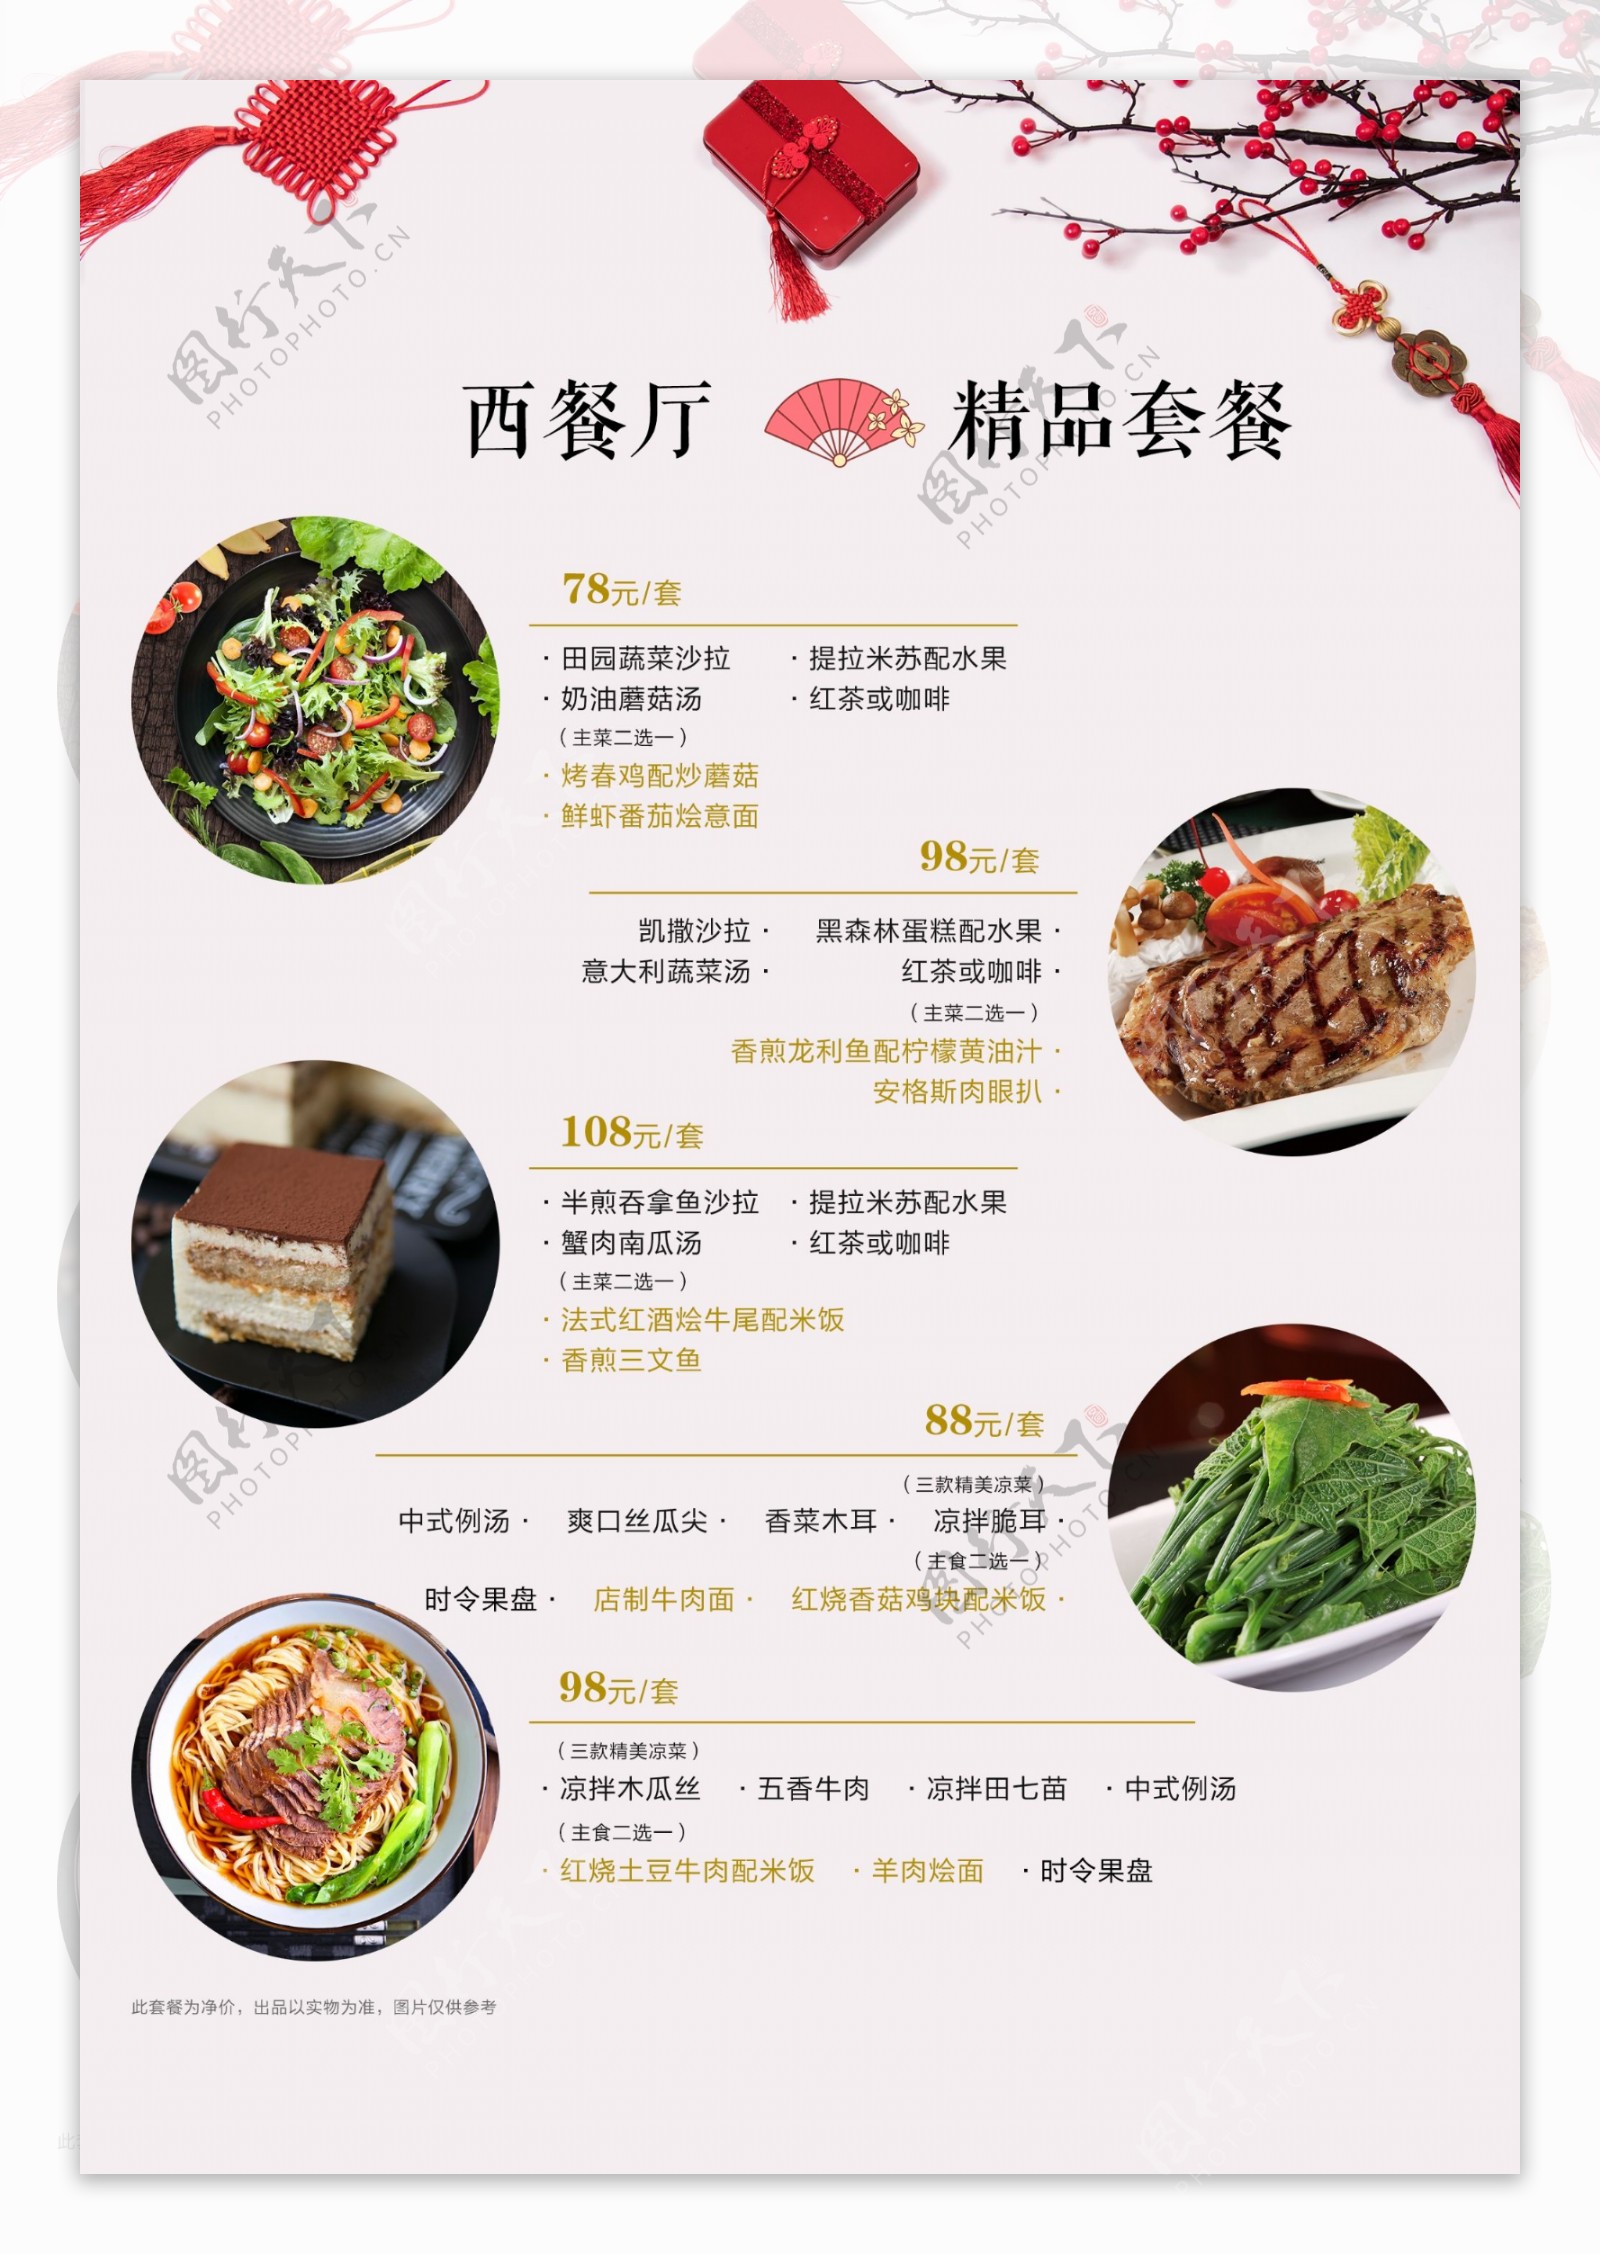 春节西餐厅套餐菜单图片